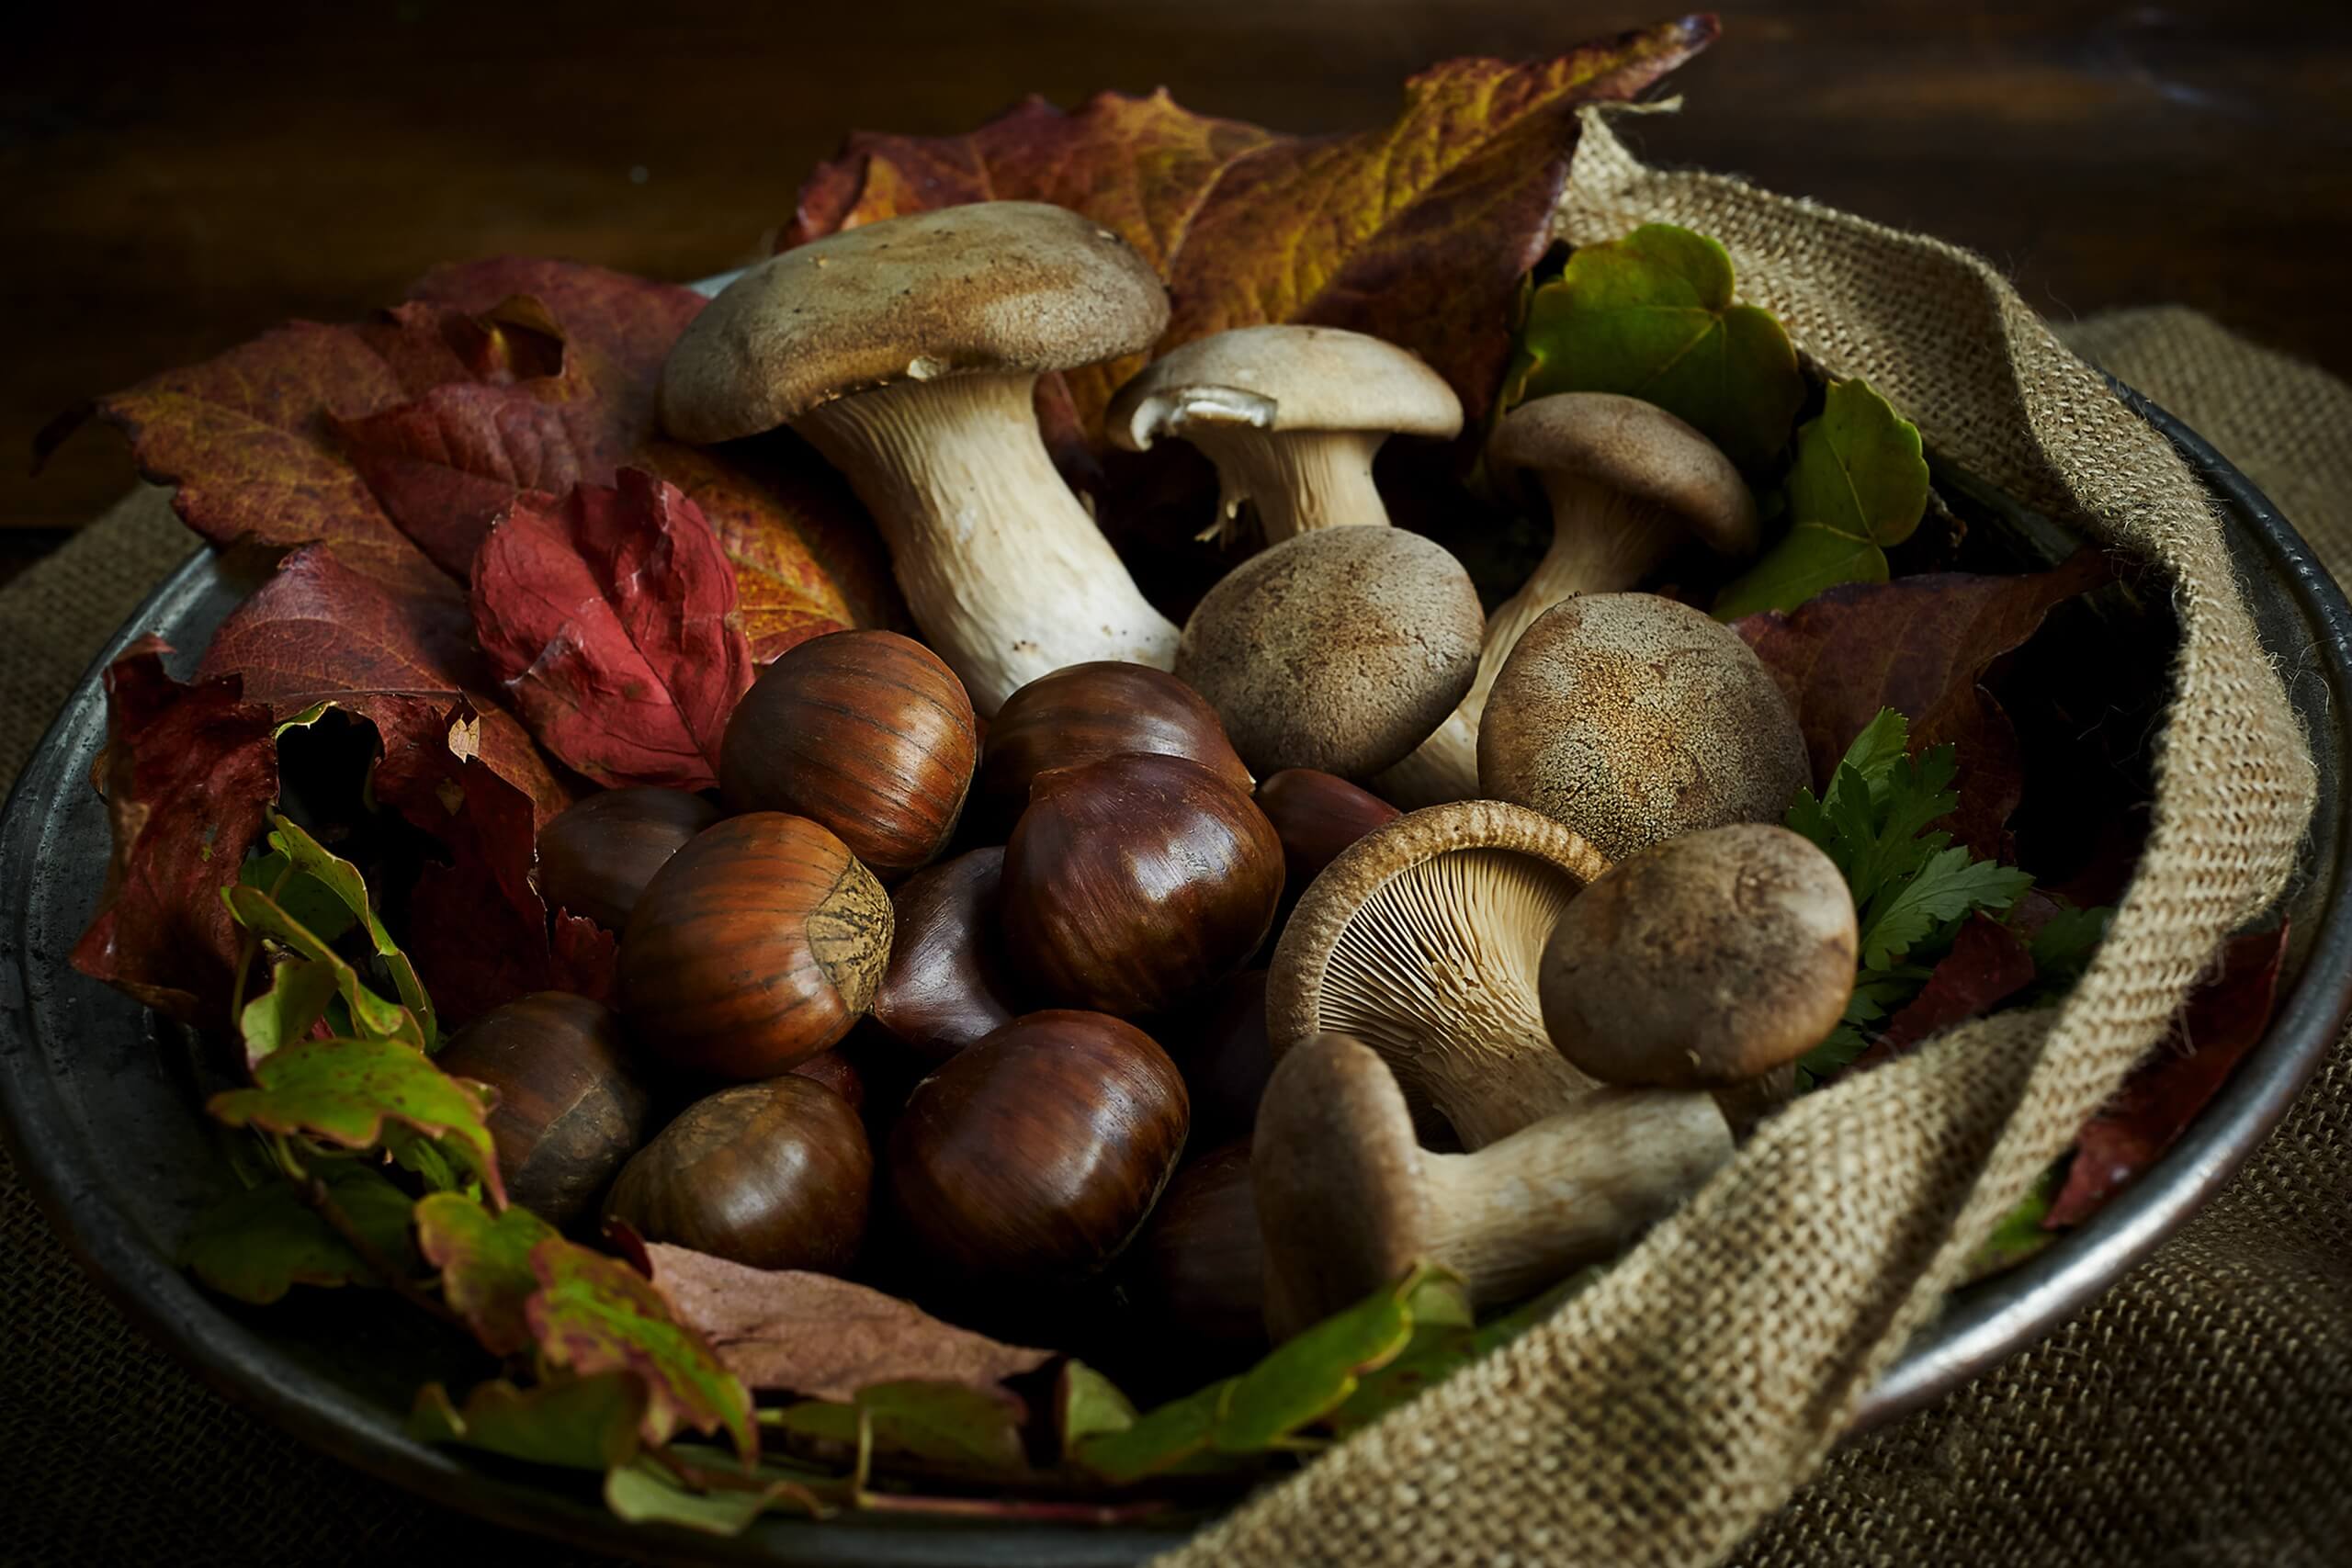 masseria-della-croce-puglia-apulia-italia-italy-cestino-funghi-castagne-basket-chestnut-mushrooms